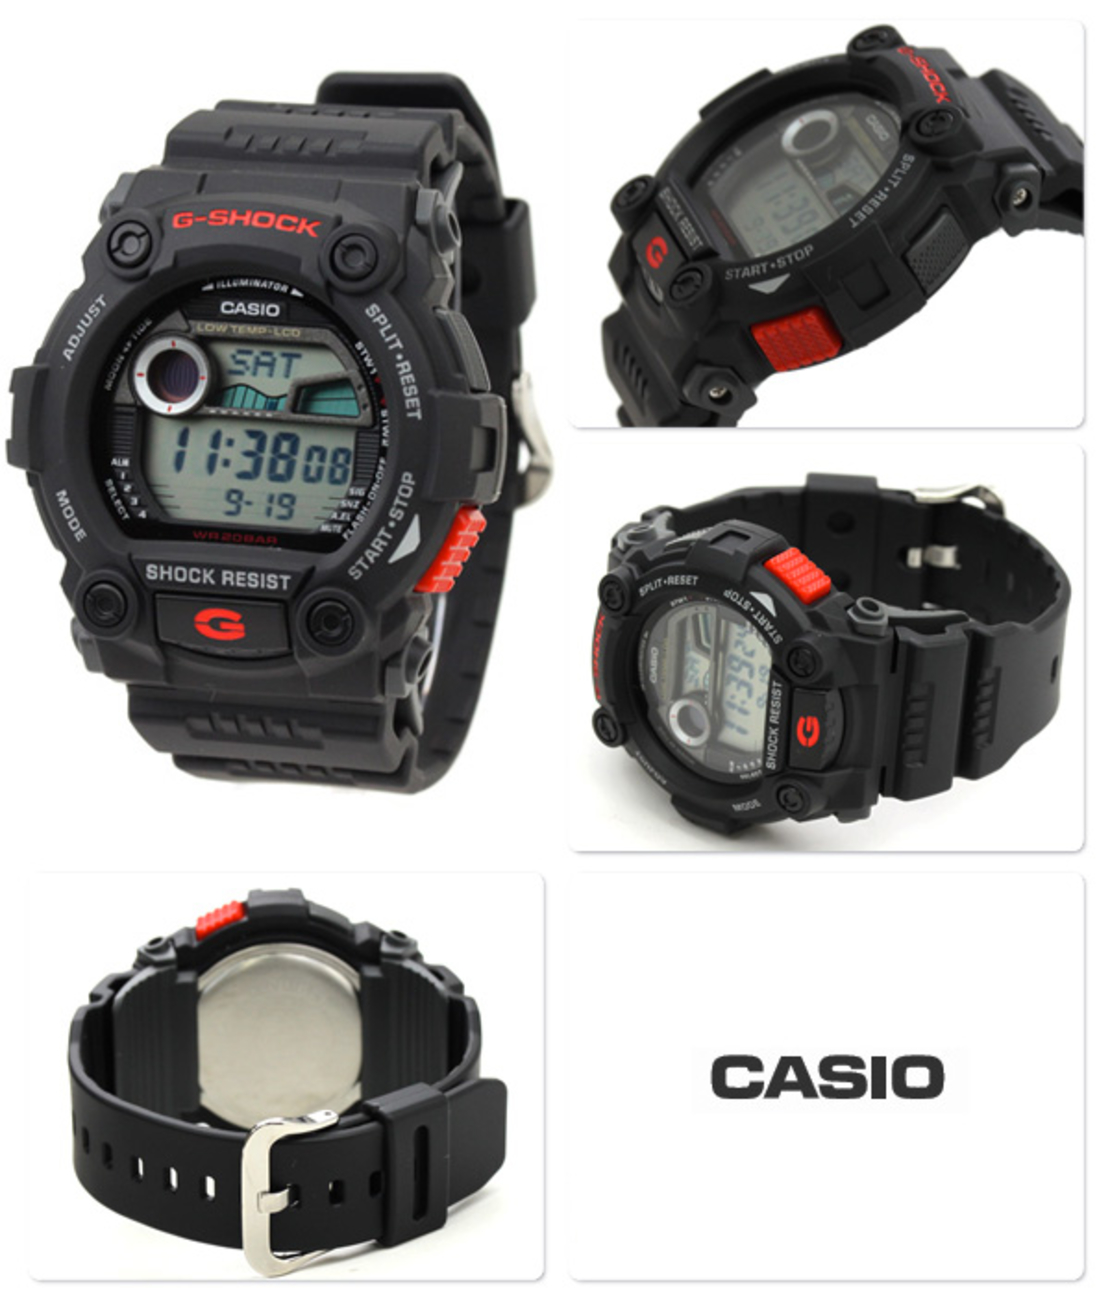 1-Casio G7900